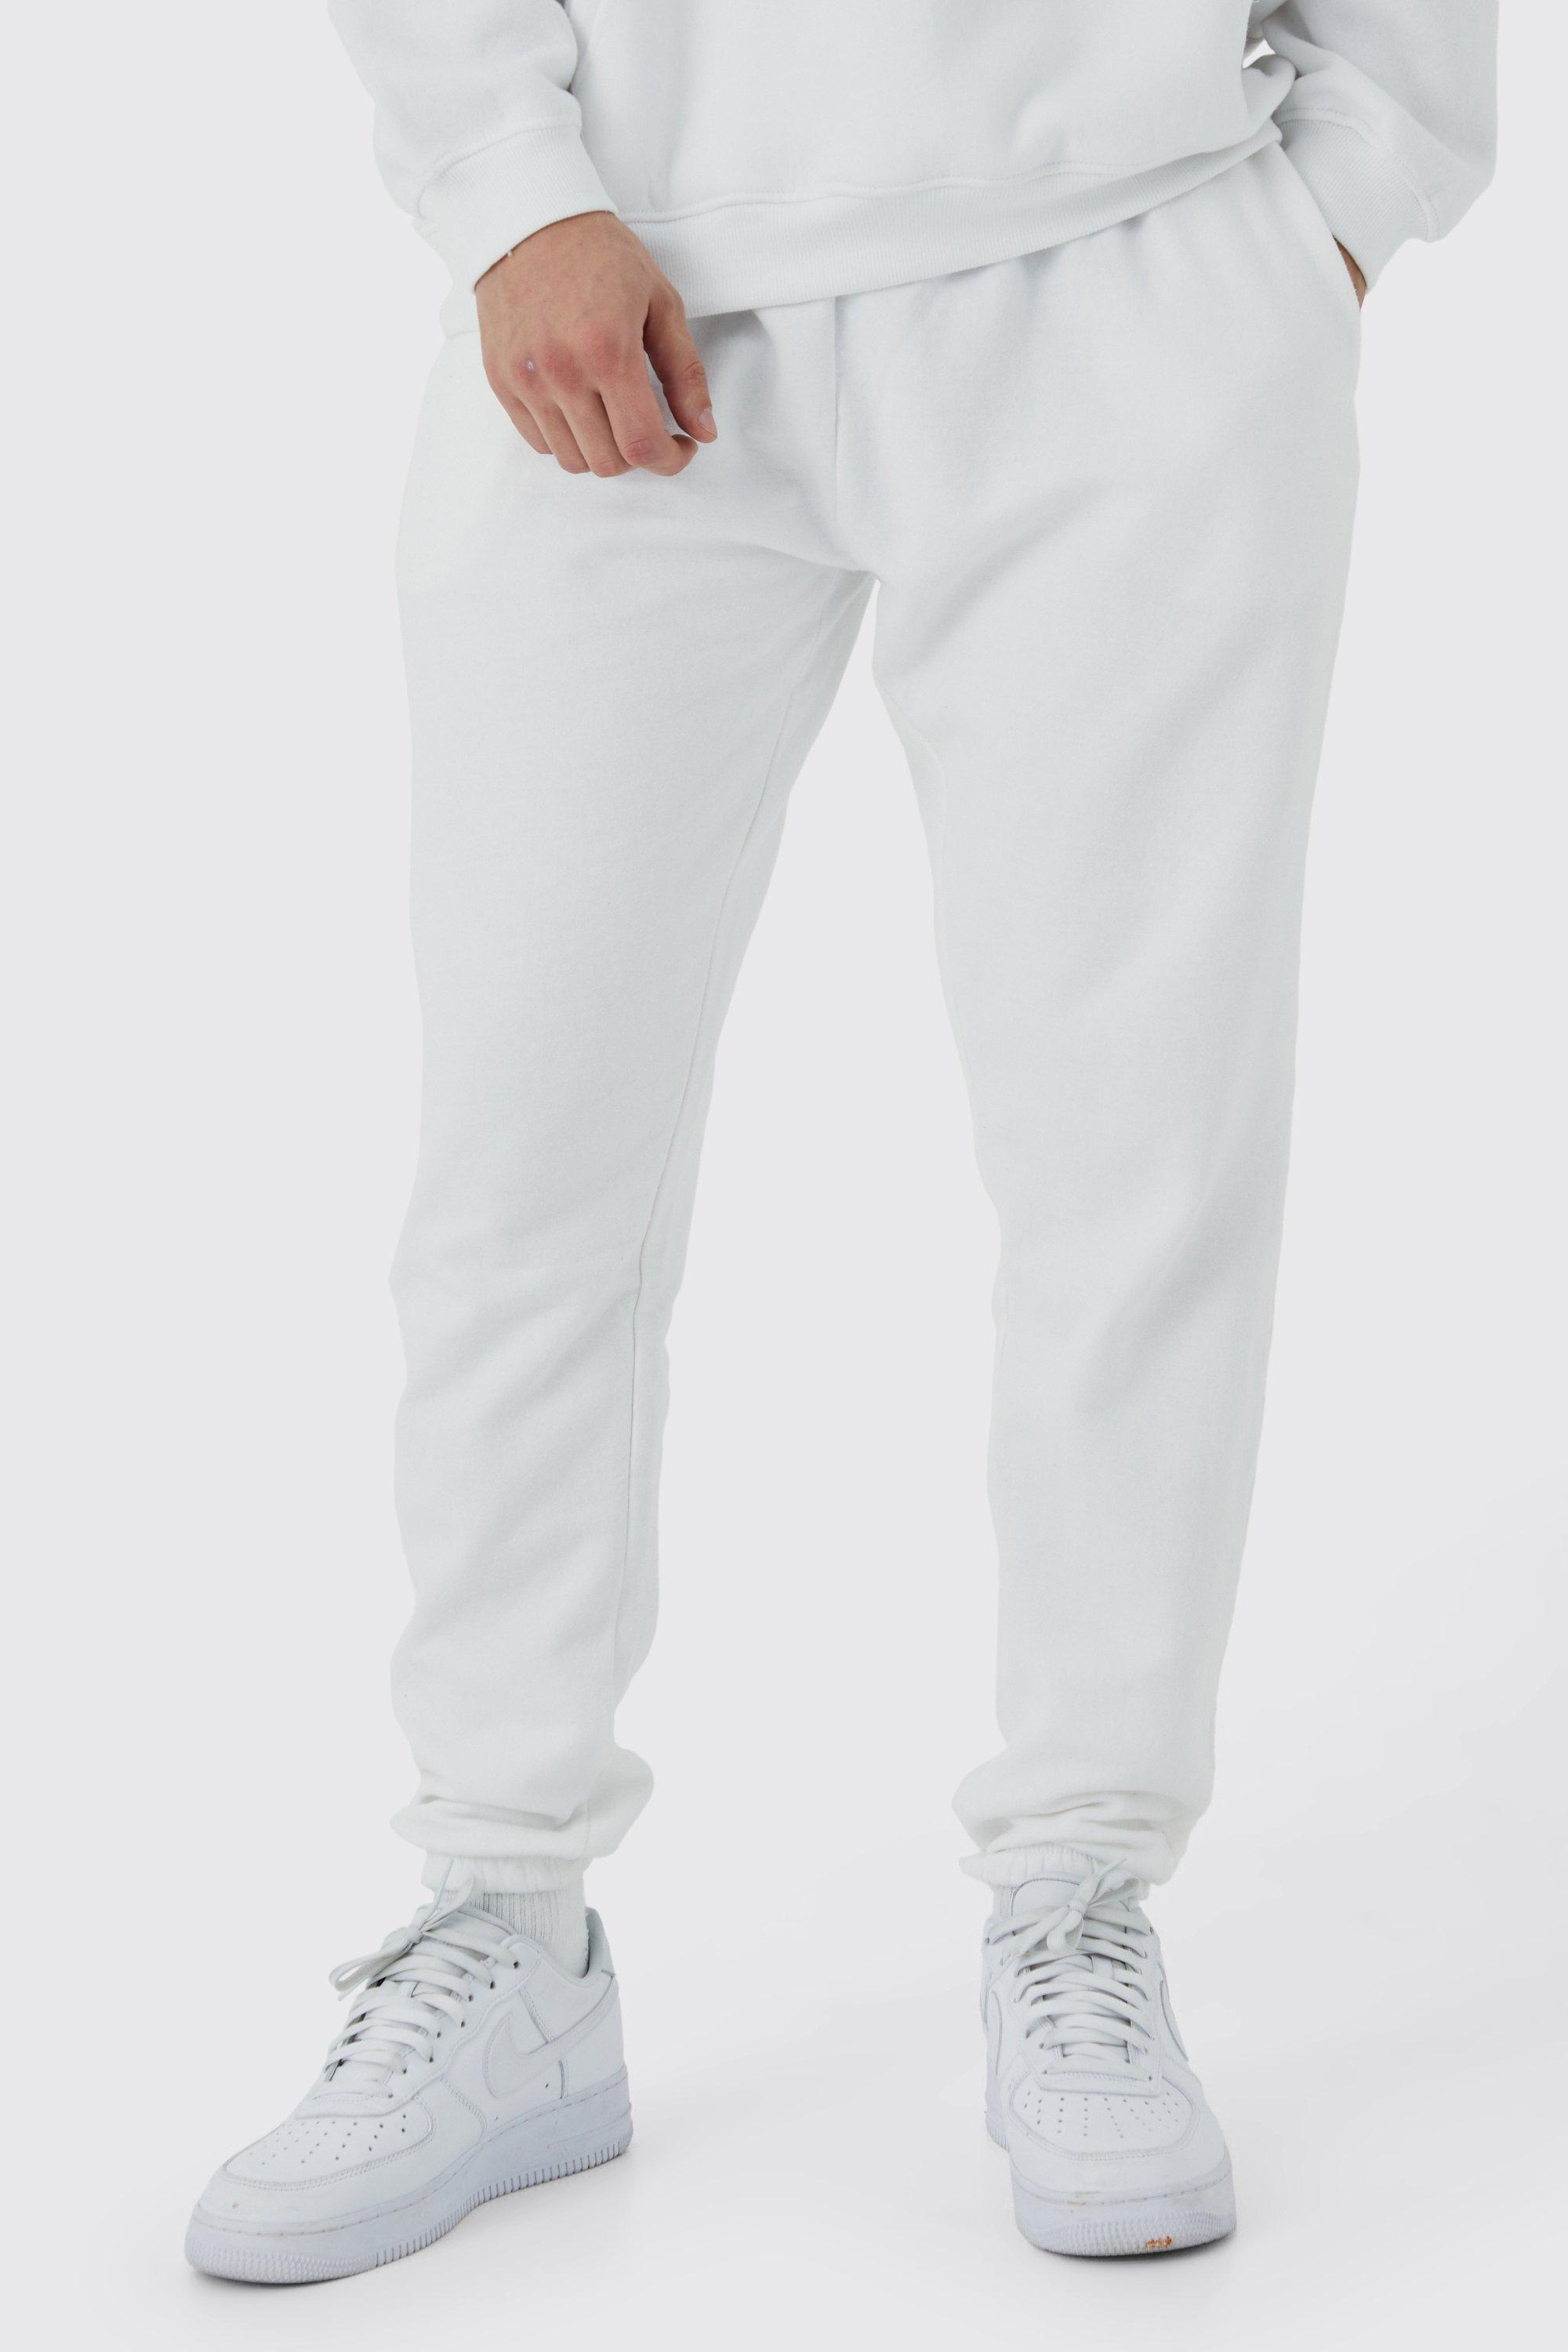 Image of Pantaloni tuta Tall Basic Core Fit, Bianco